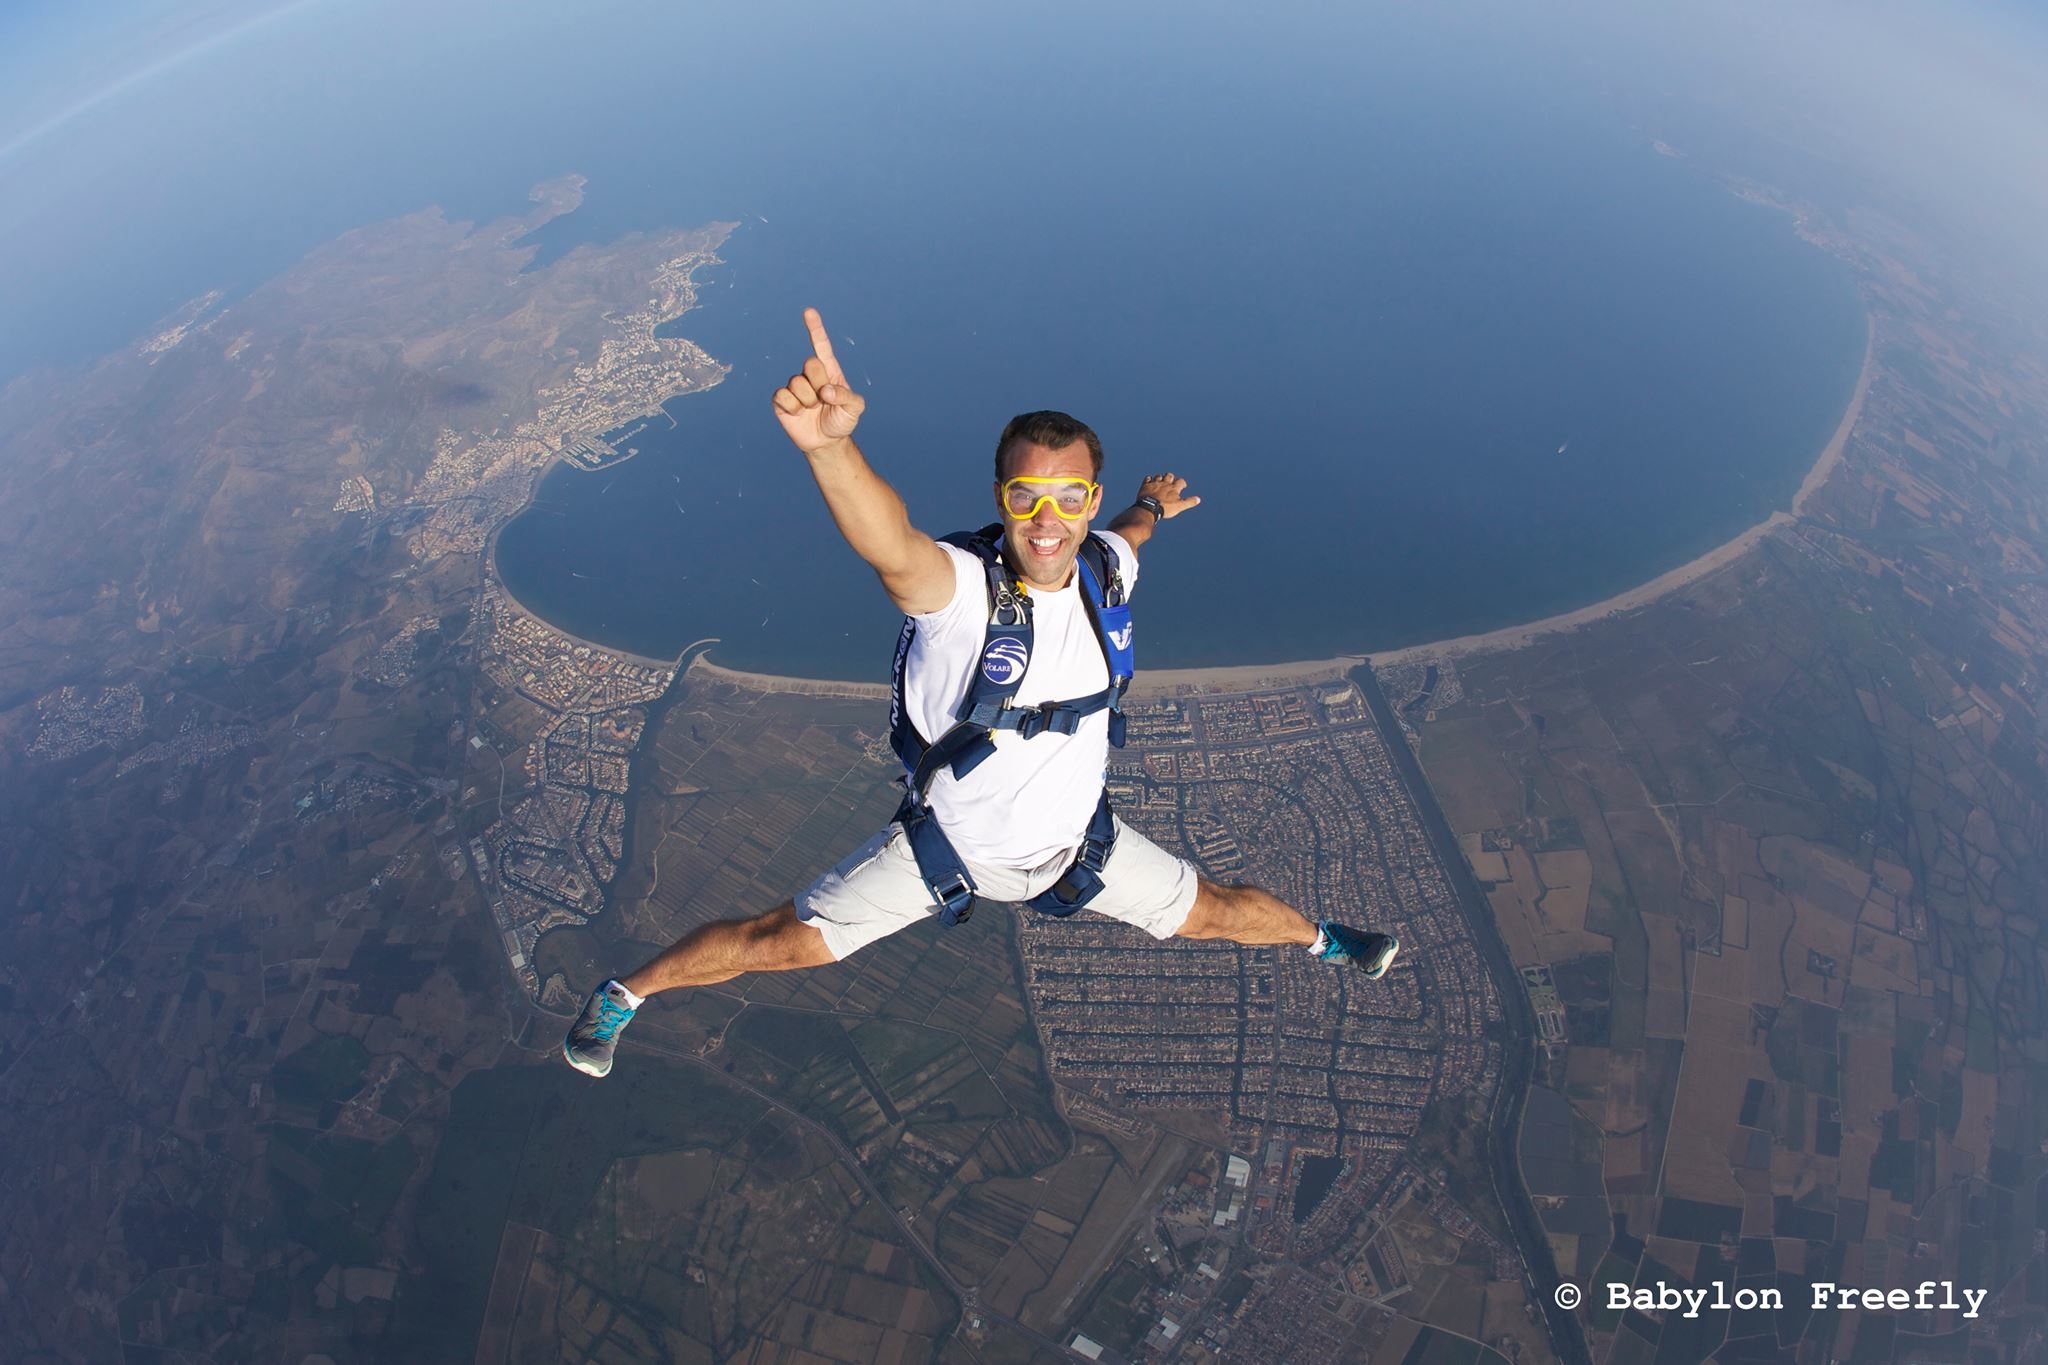 Lesley Gale: We're skydivers so…